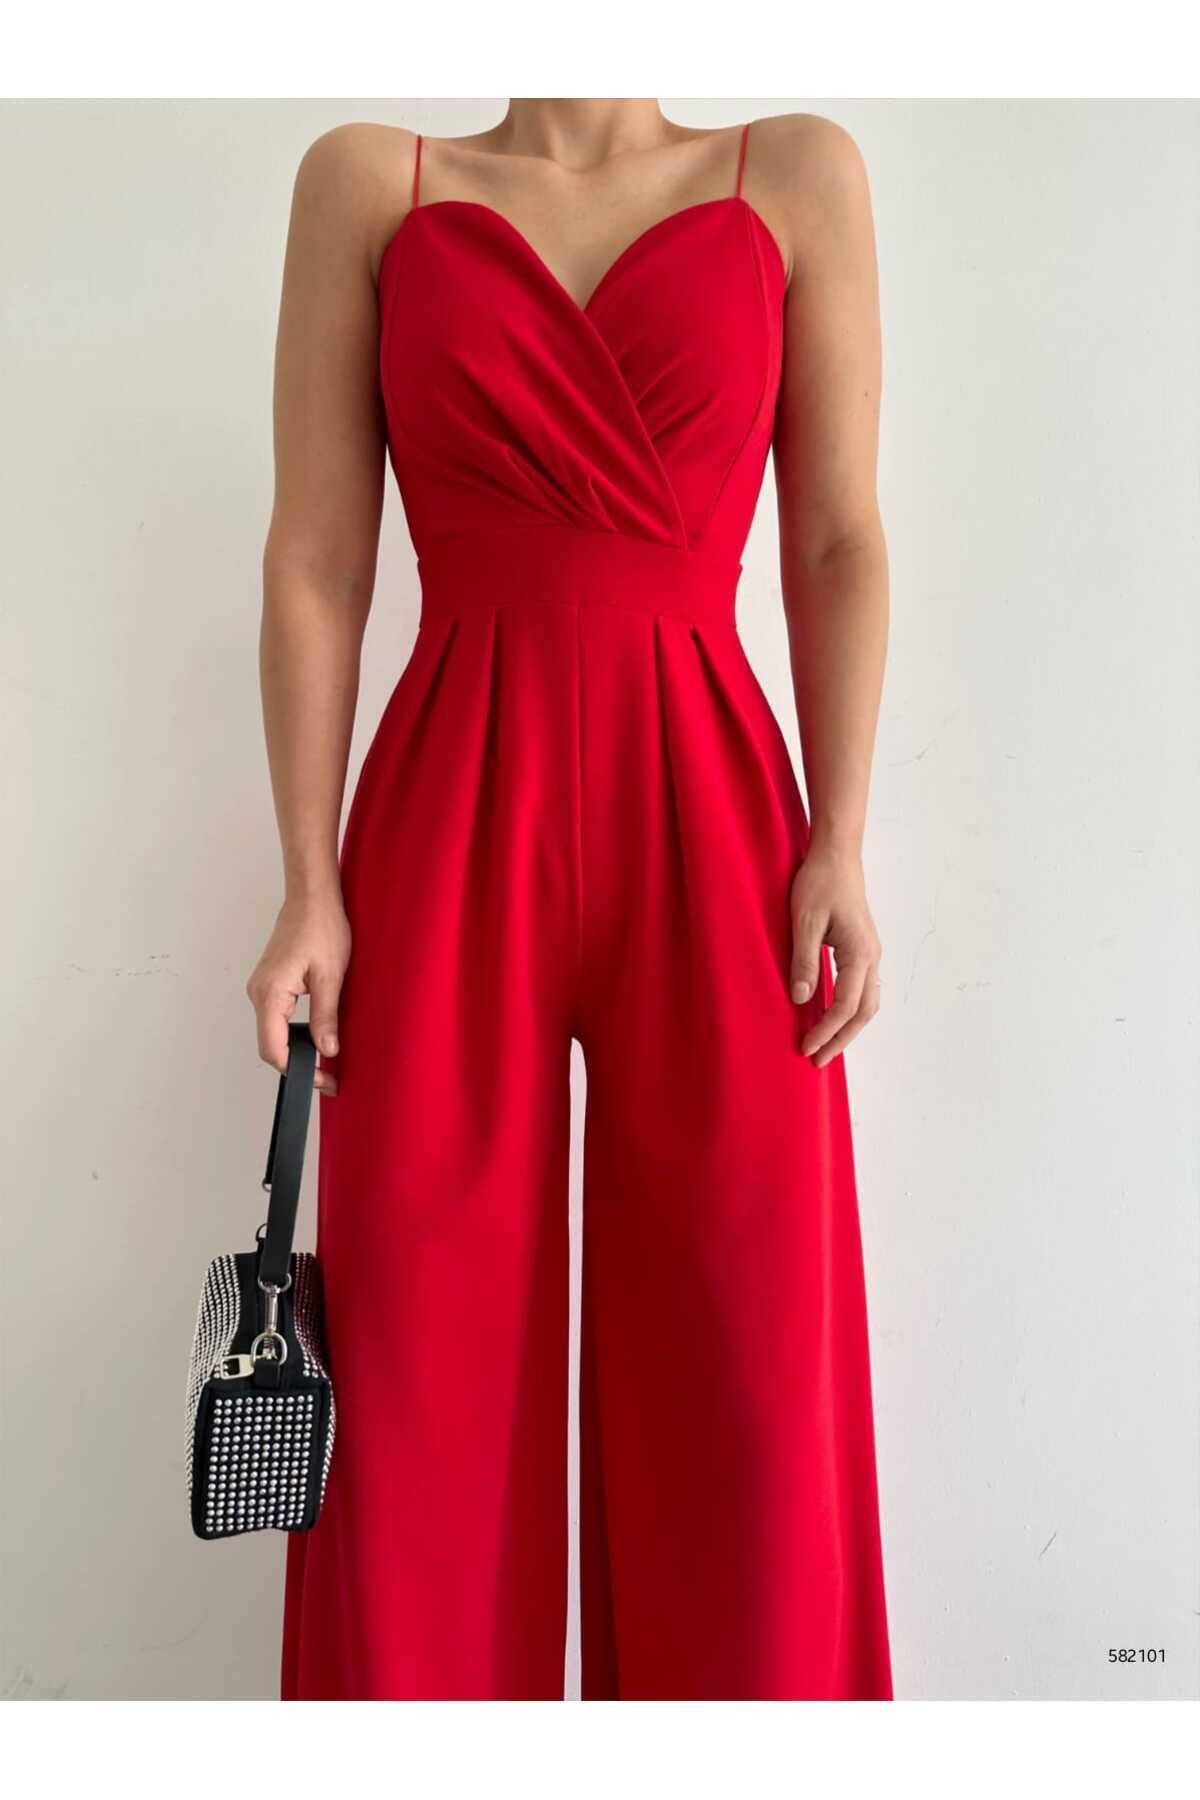 rengastyle Kadın Kırmızı Ithal Krep Kumaş Askılı Geniş Paça Tulum Elbise